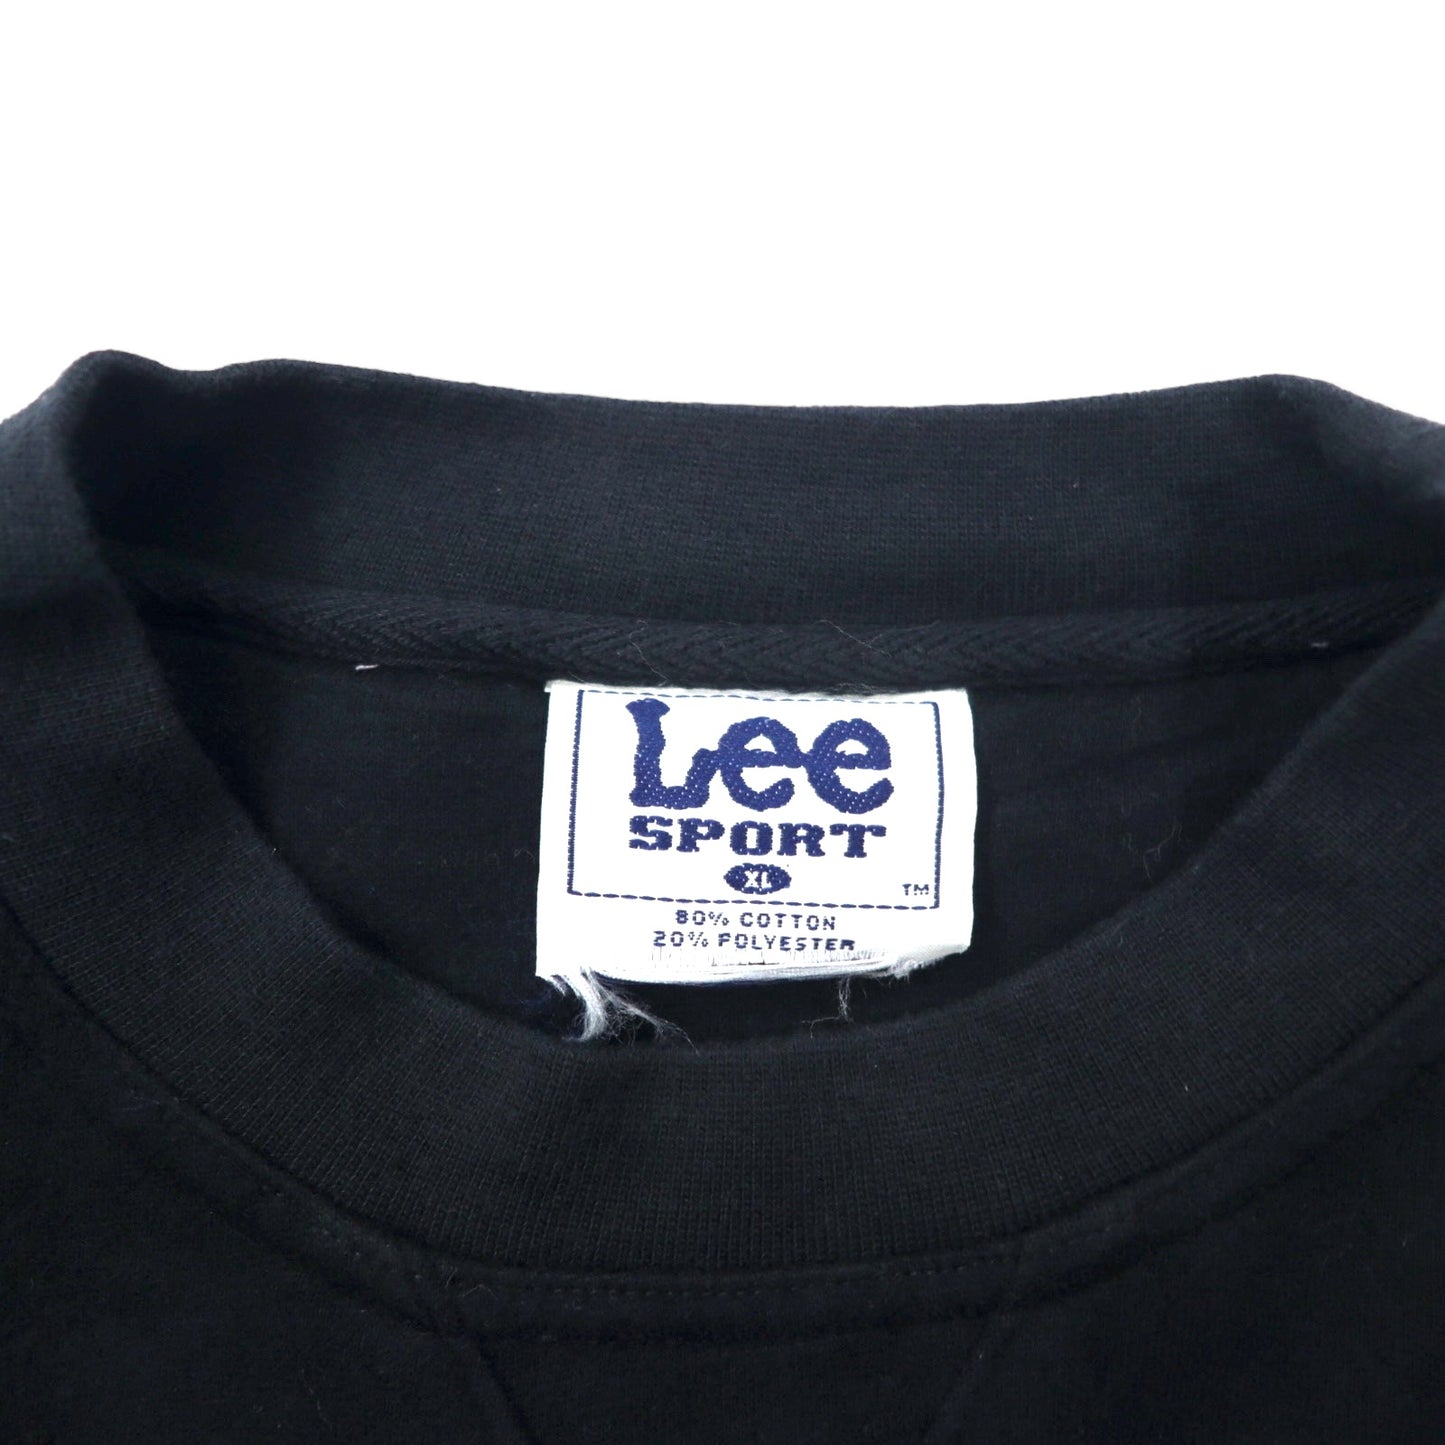 Lee SPORT 90年代 カレッジ スウェット XL ブラック コットン 裏起毛 PURDUE ビッグサイズ